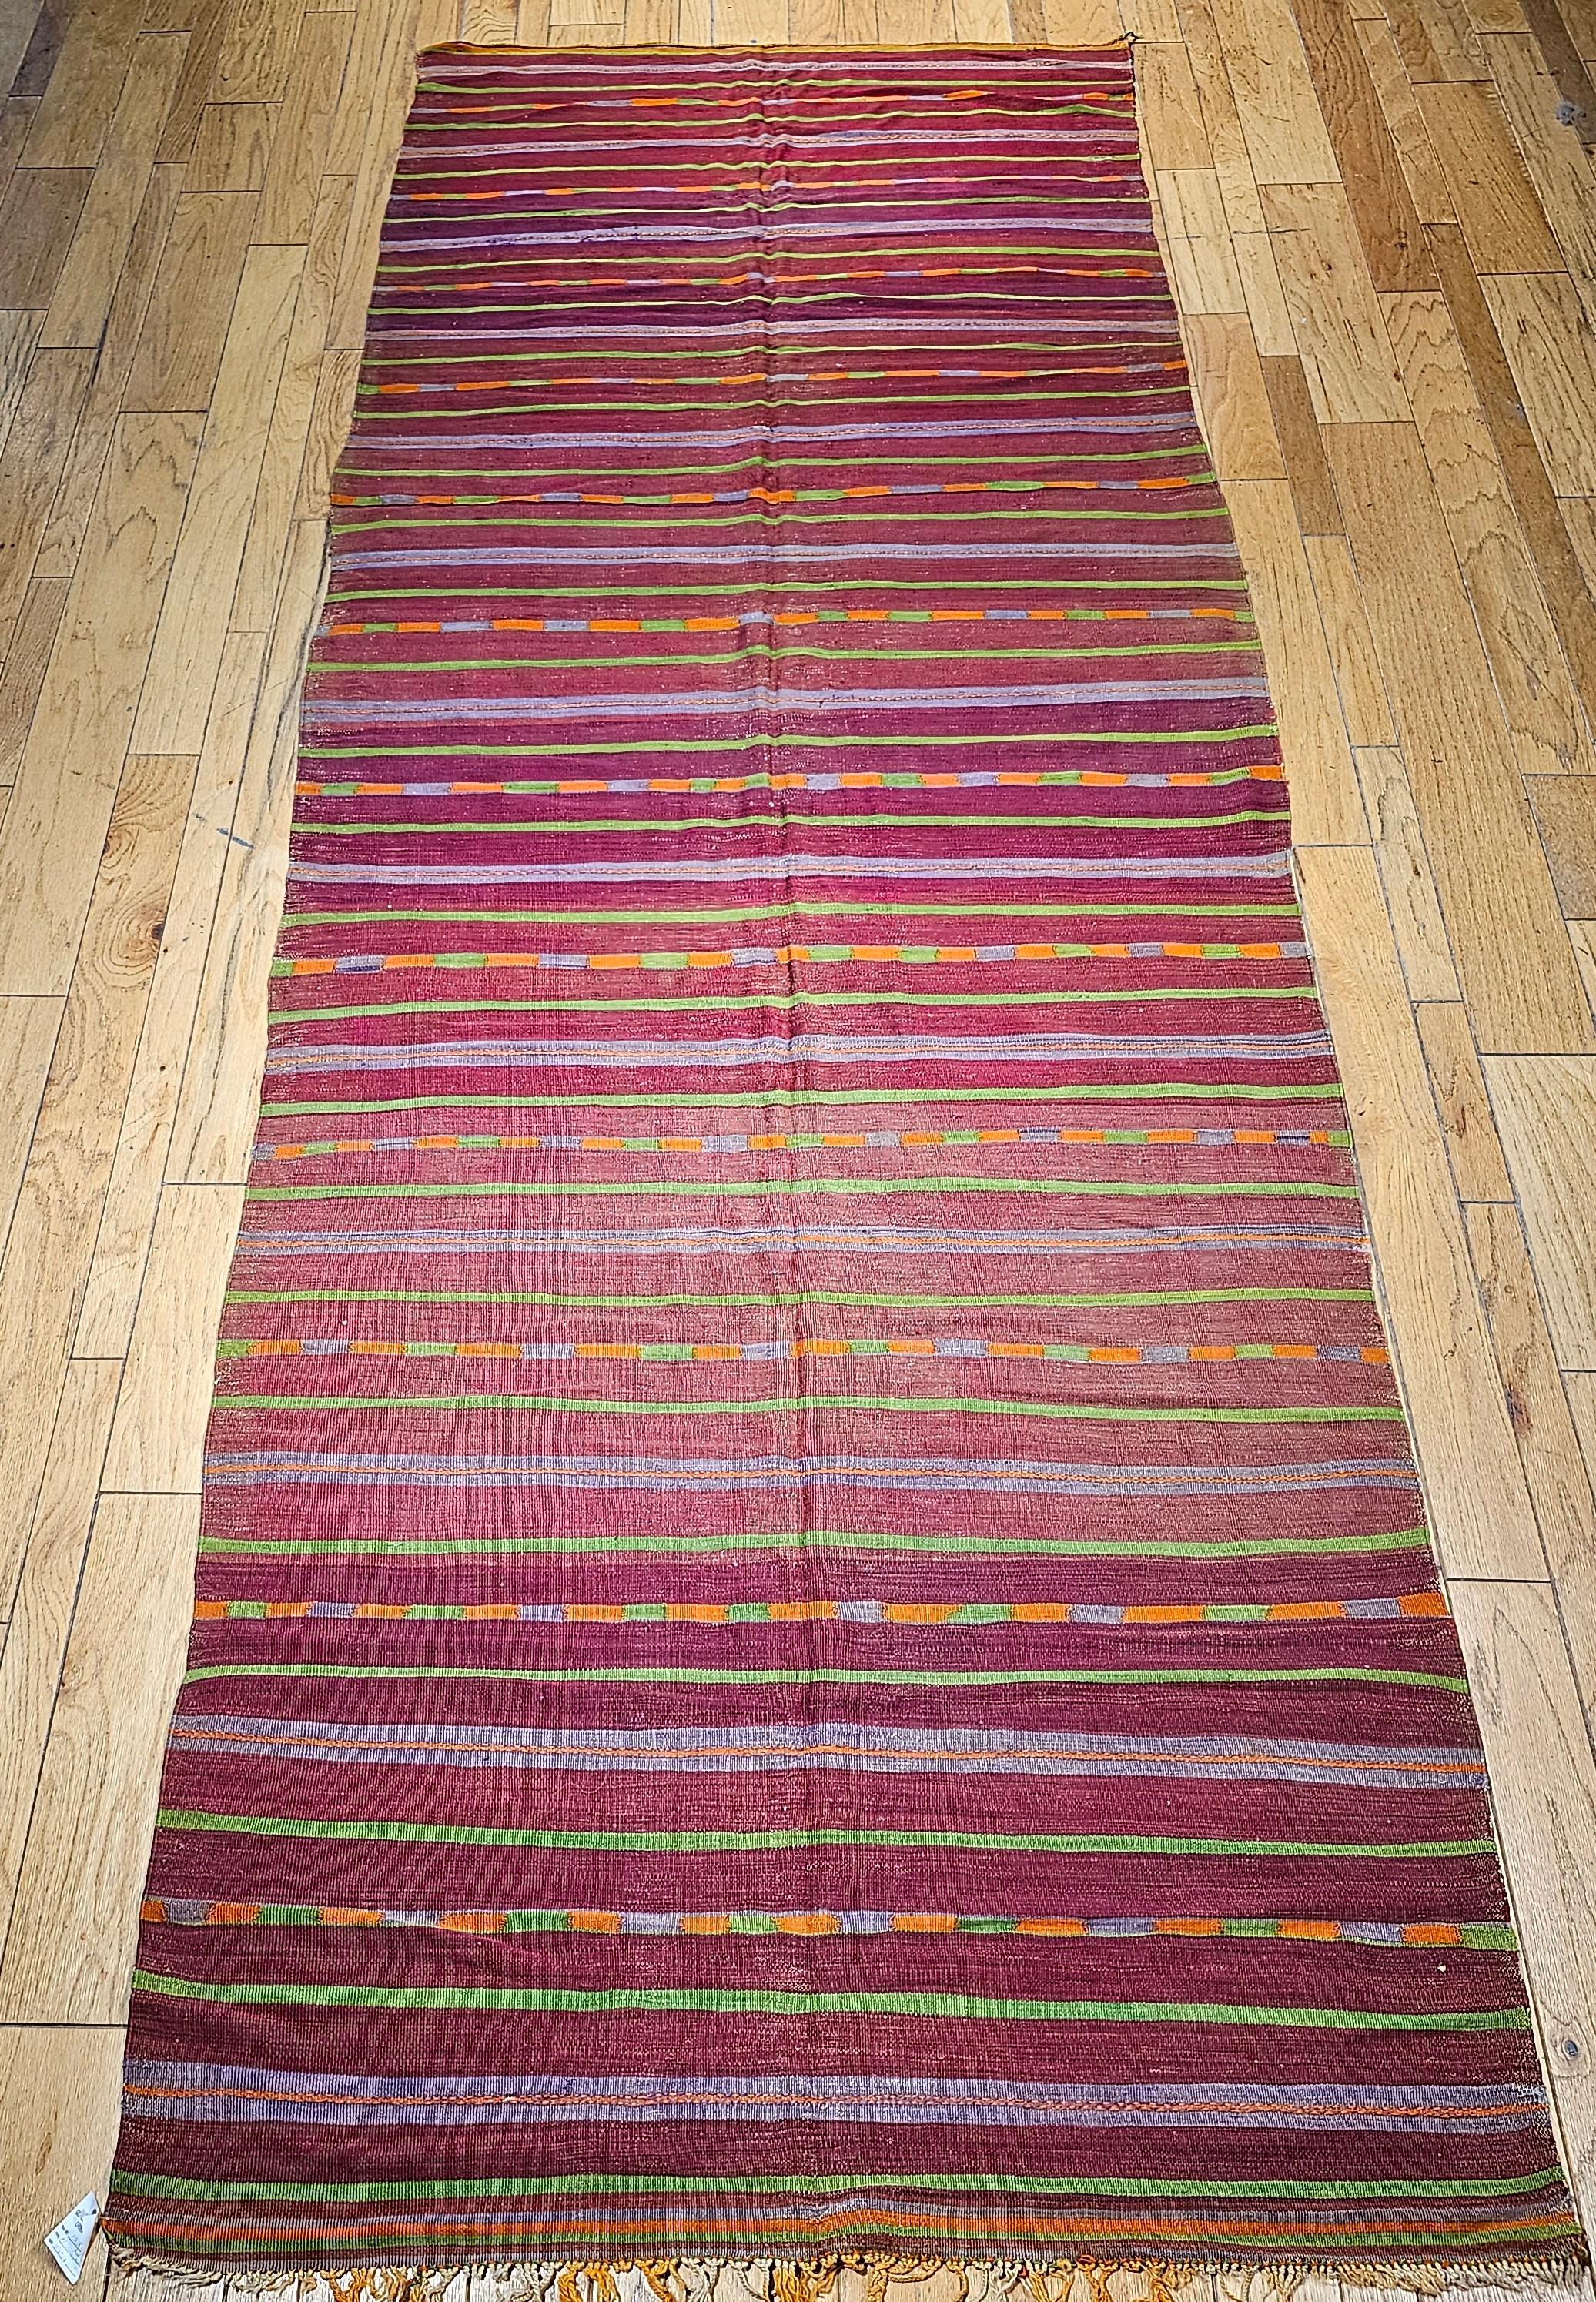 Magnifique tapis kilim marocain vintage du milieu des années 1900 avec un beau motif de rayures et de merveilleuses couleurs douces en rouge, vert, violet, jaune, lavande et autres nuances.   La taille du tapis en fait un objet idéal pour les